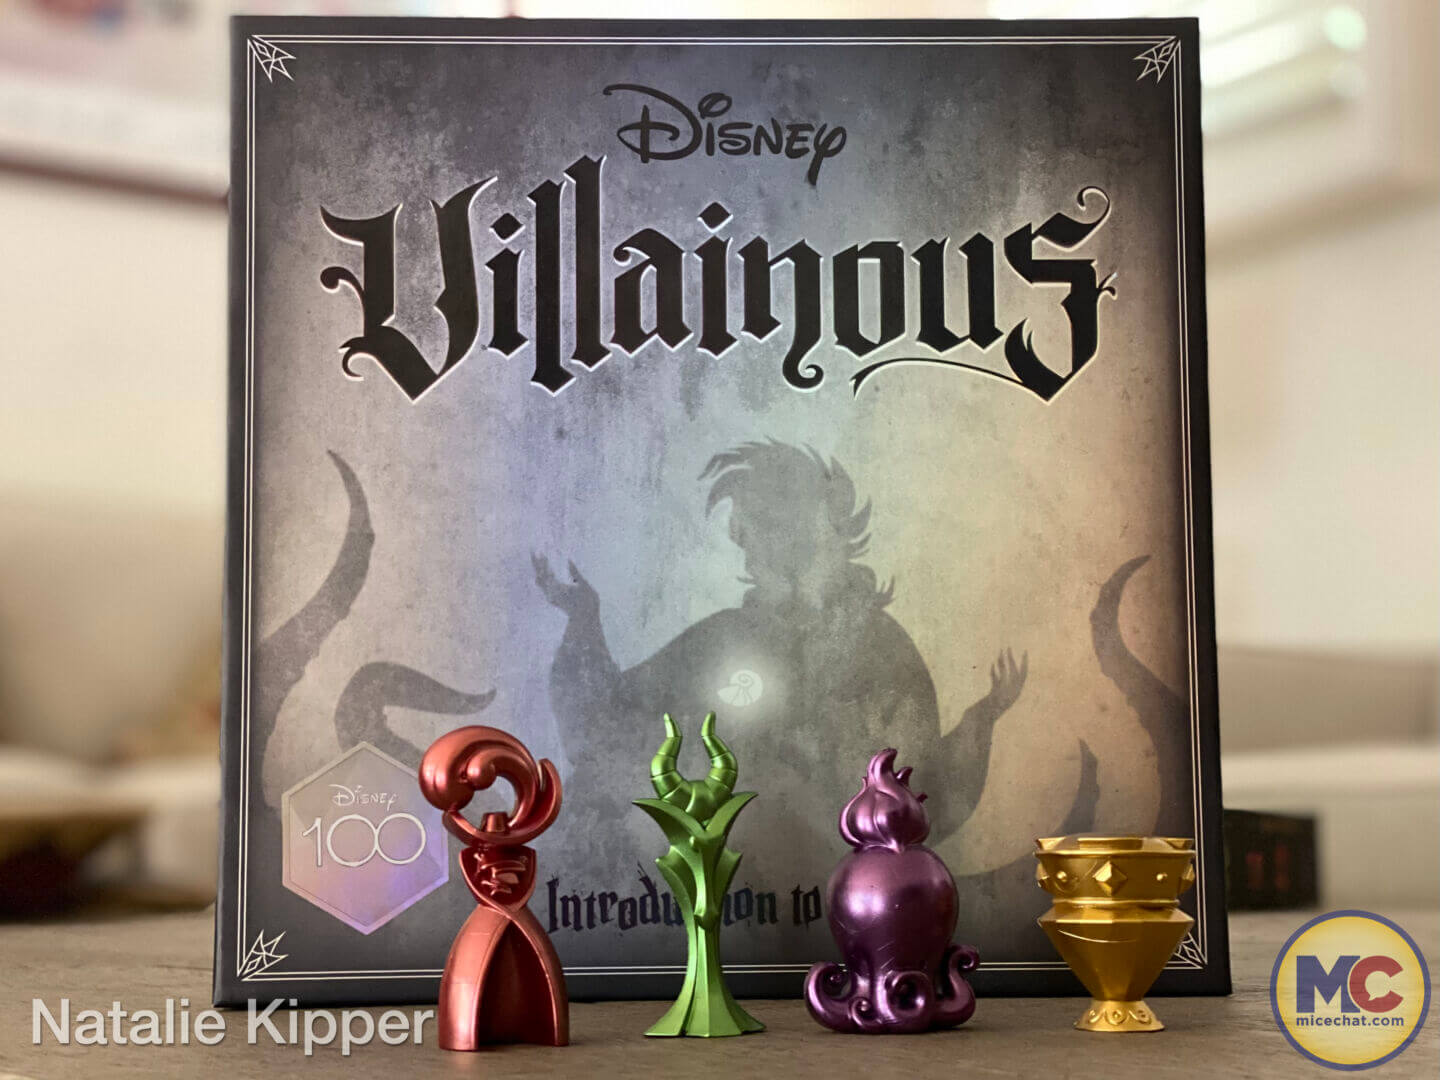 Villainous Mike Mulvihill, Disney Villainous Game Developer Mike Mulvihill &#8211; The Devil is In the Details!